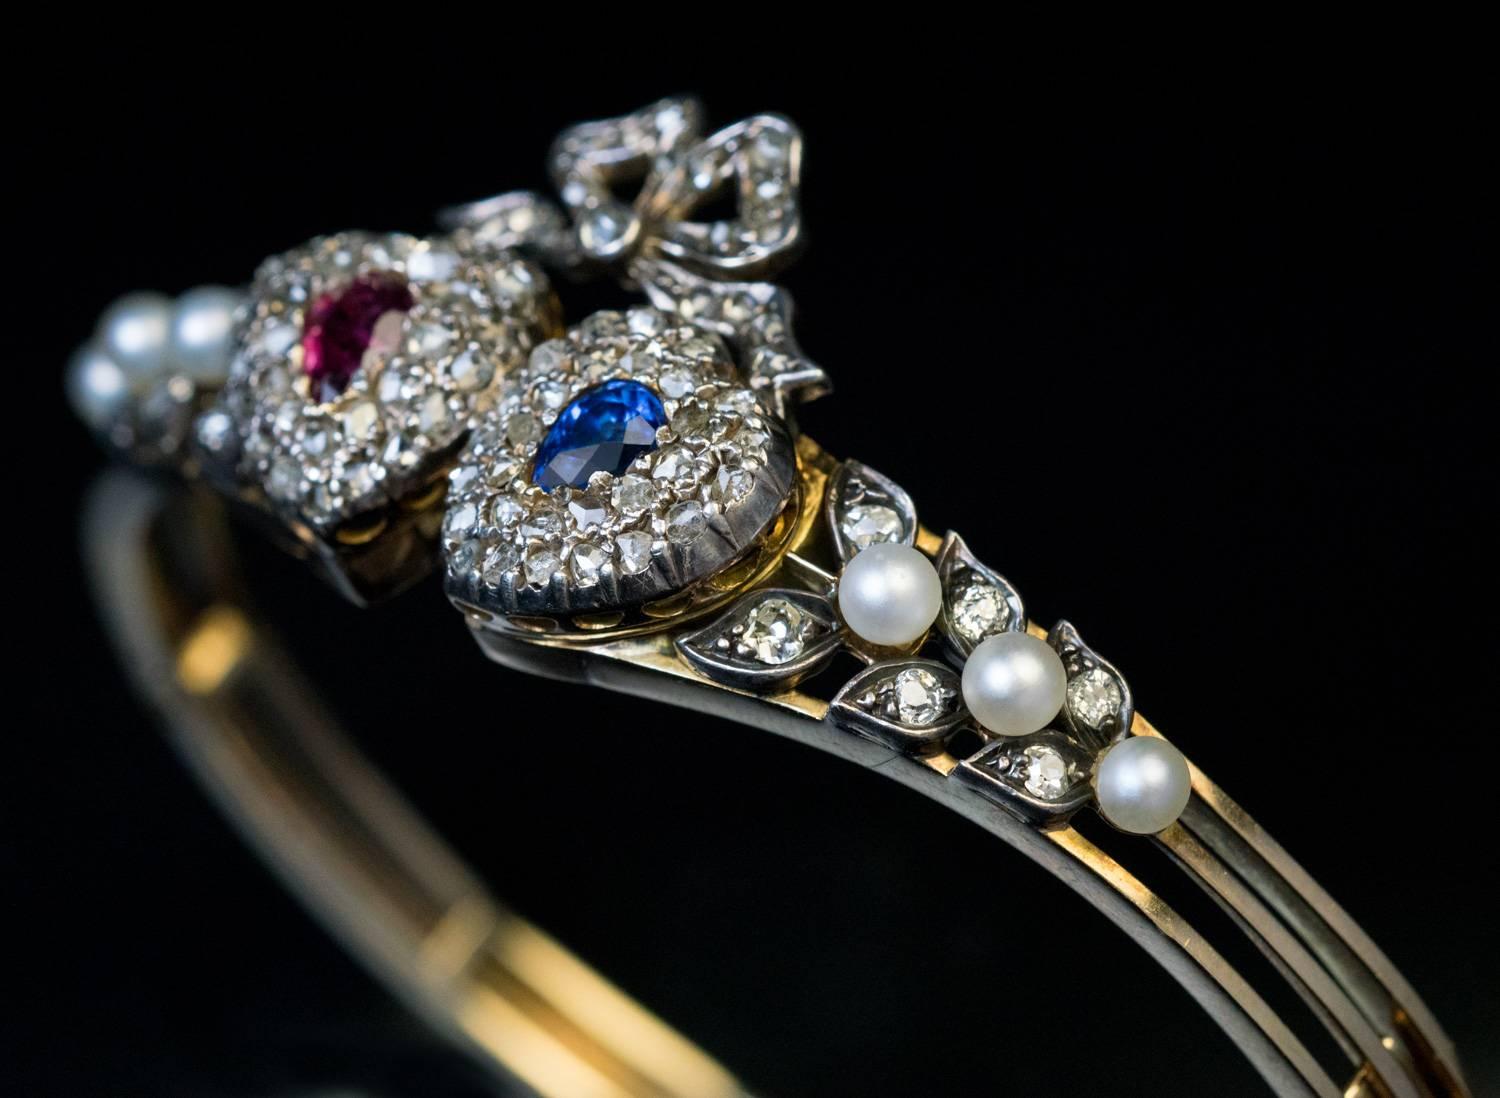 Circa 1880s

Un bracelet bangle ancien en or 14K est centré de deux cœurs en argent sertis d'un rubis en forme de poire et d'un saphir bleu (environ 0,30 ct et 0,35 ct) entourés de diamants taille rose. Les cœurs sont surmontés d'un nœud en diamants